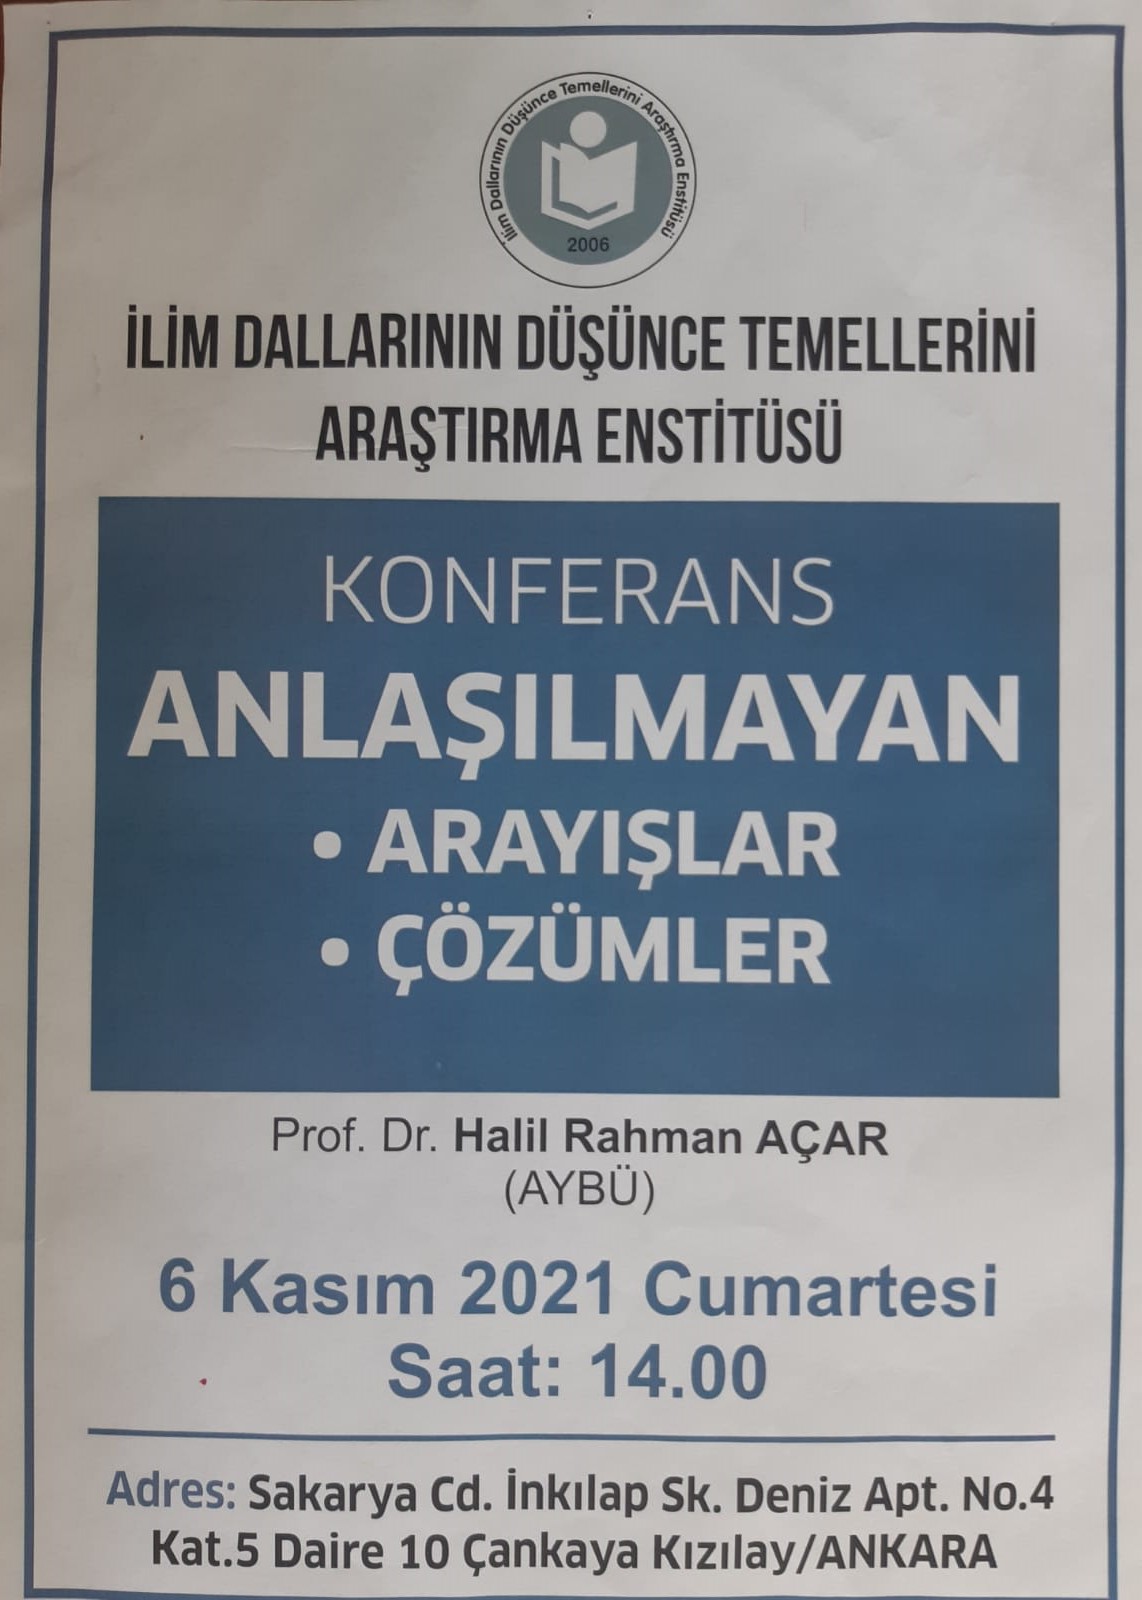 Anlaşılmayan -06.11.2021- Prof. Dr. Halil Rahman AÇAR